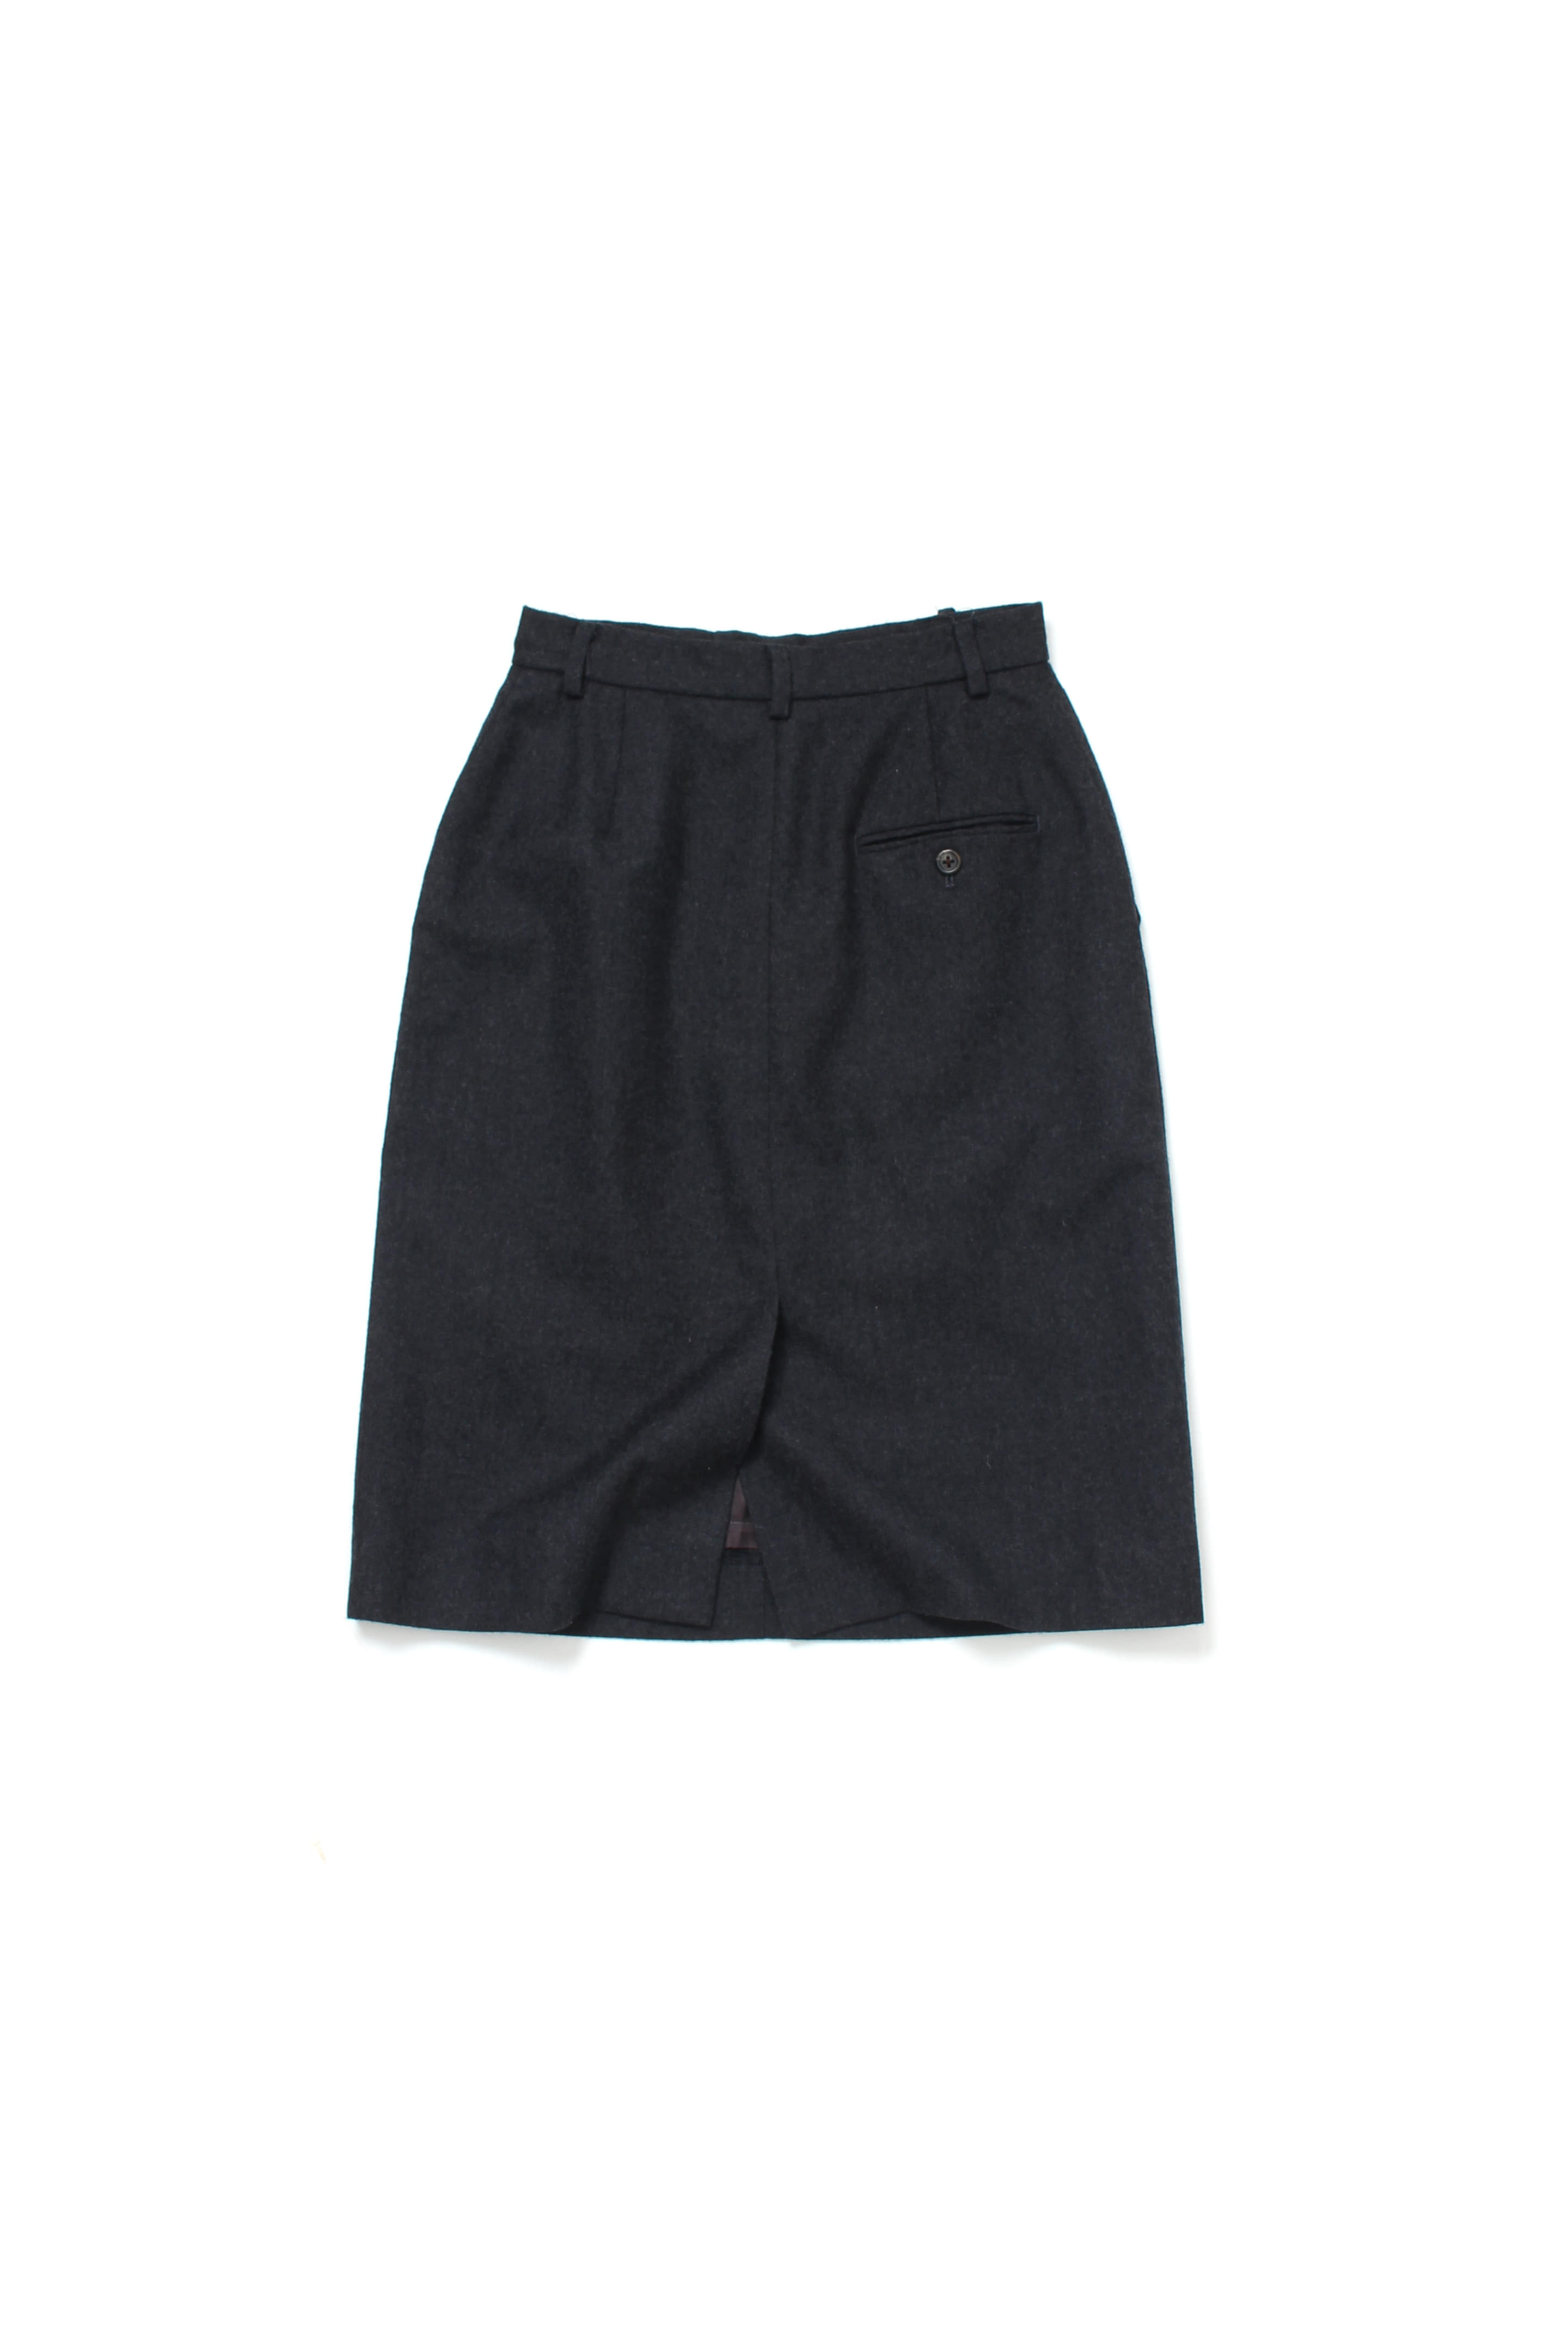 Polo Ralph Lauren Wool Skirts